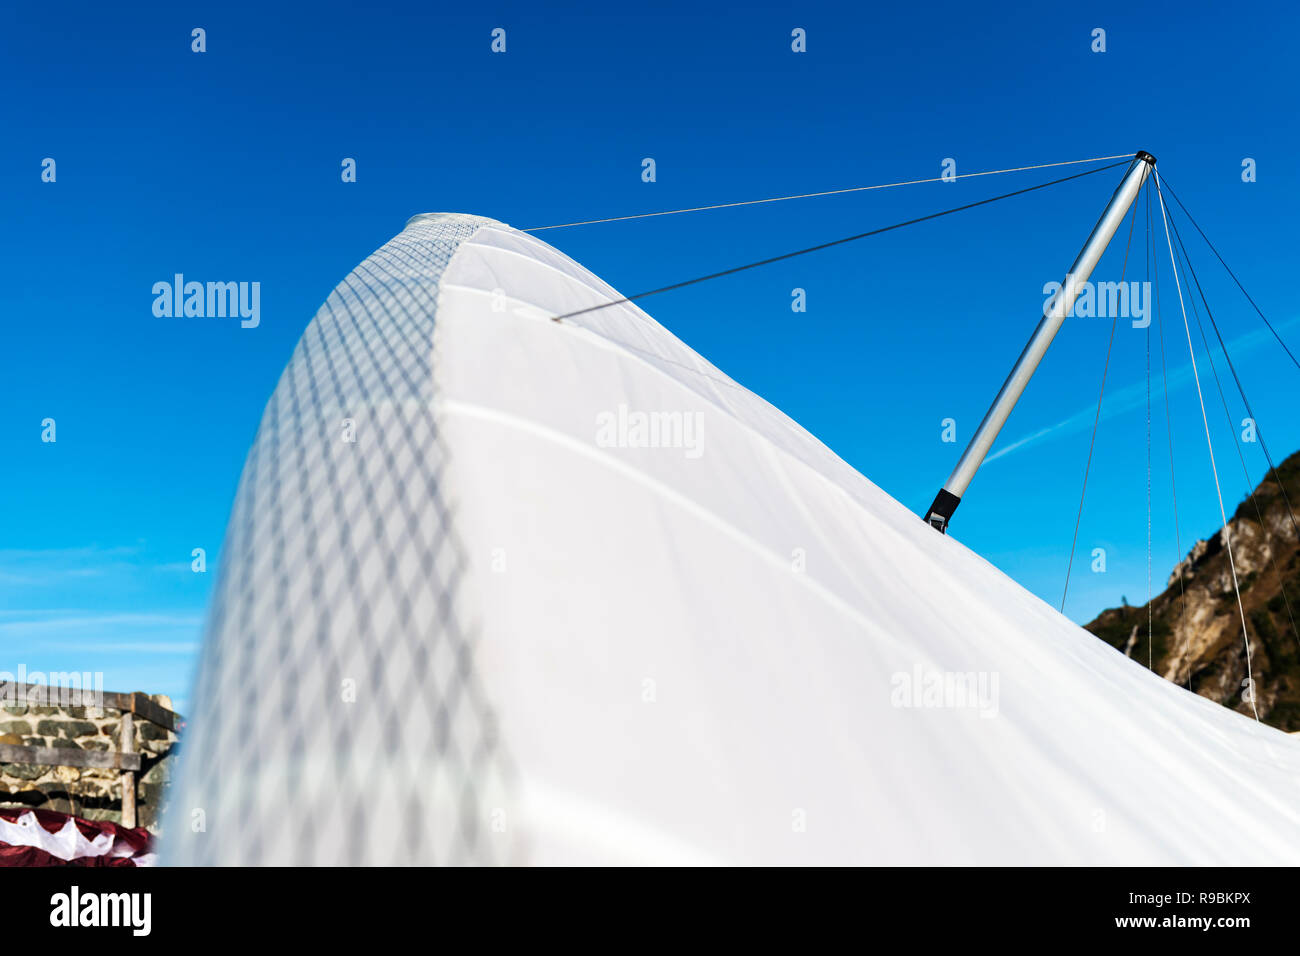 Vue grand angle avec une faible profondeur de champ sur la surface d'un voile de cerf-volant blanc contre un ciel bleu estival sur le Tegelberg en Bavière. La f Banque D'Images